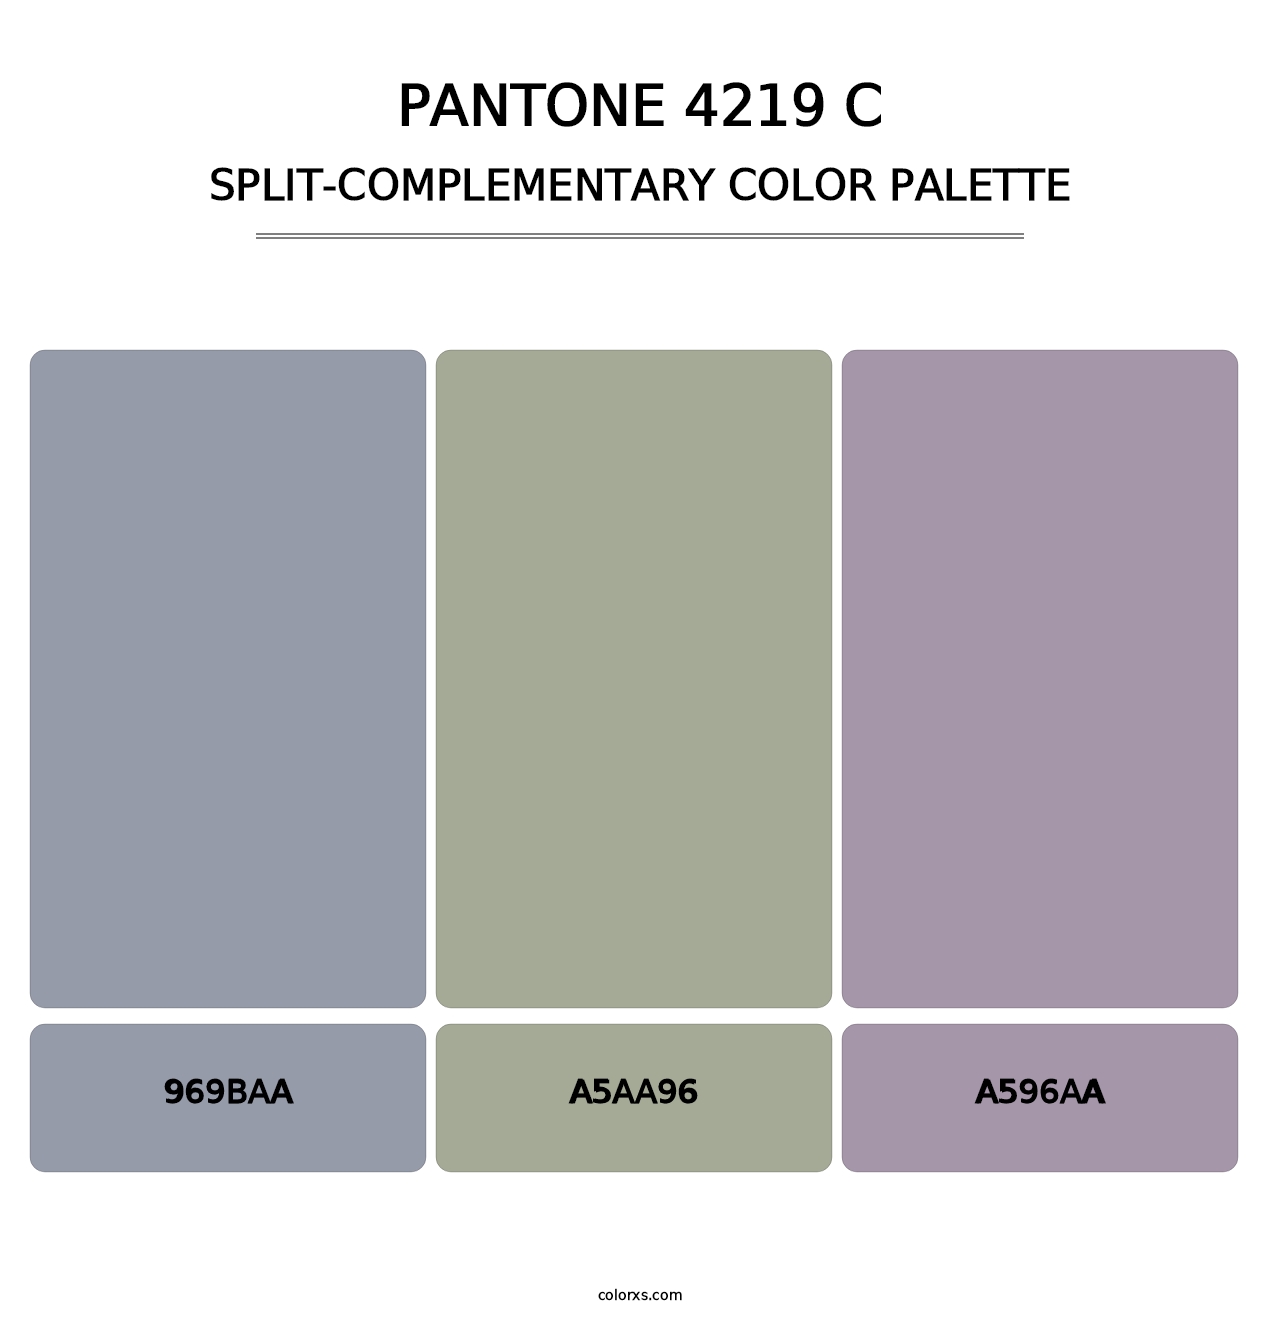 PANTONE 4219 C - Split-Complementary Color Palette